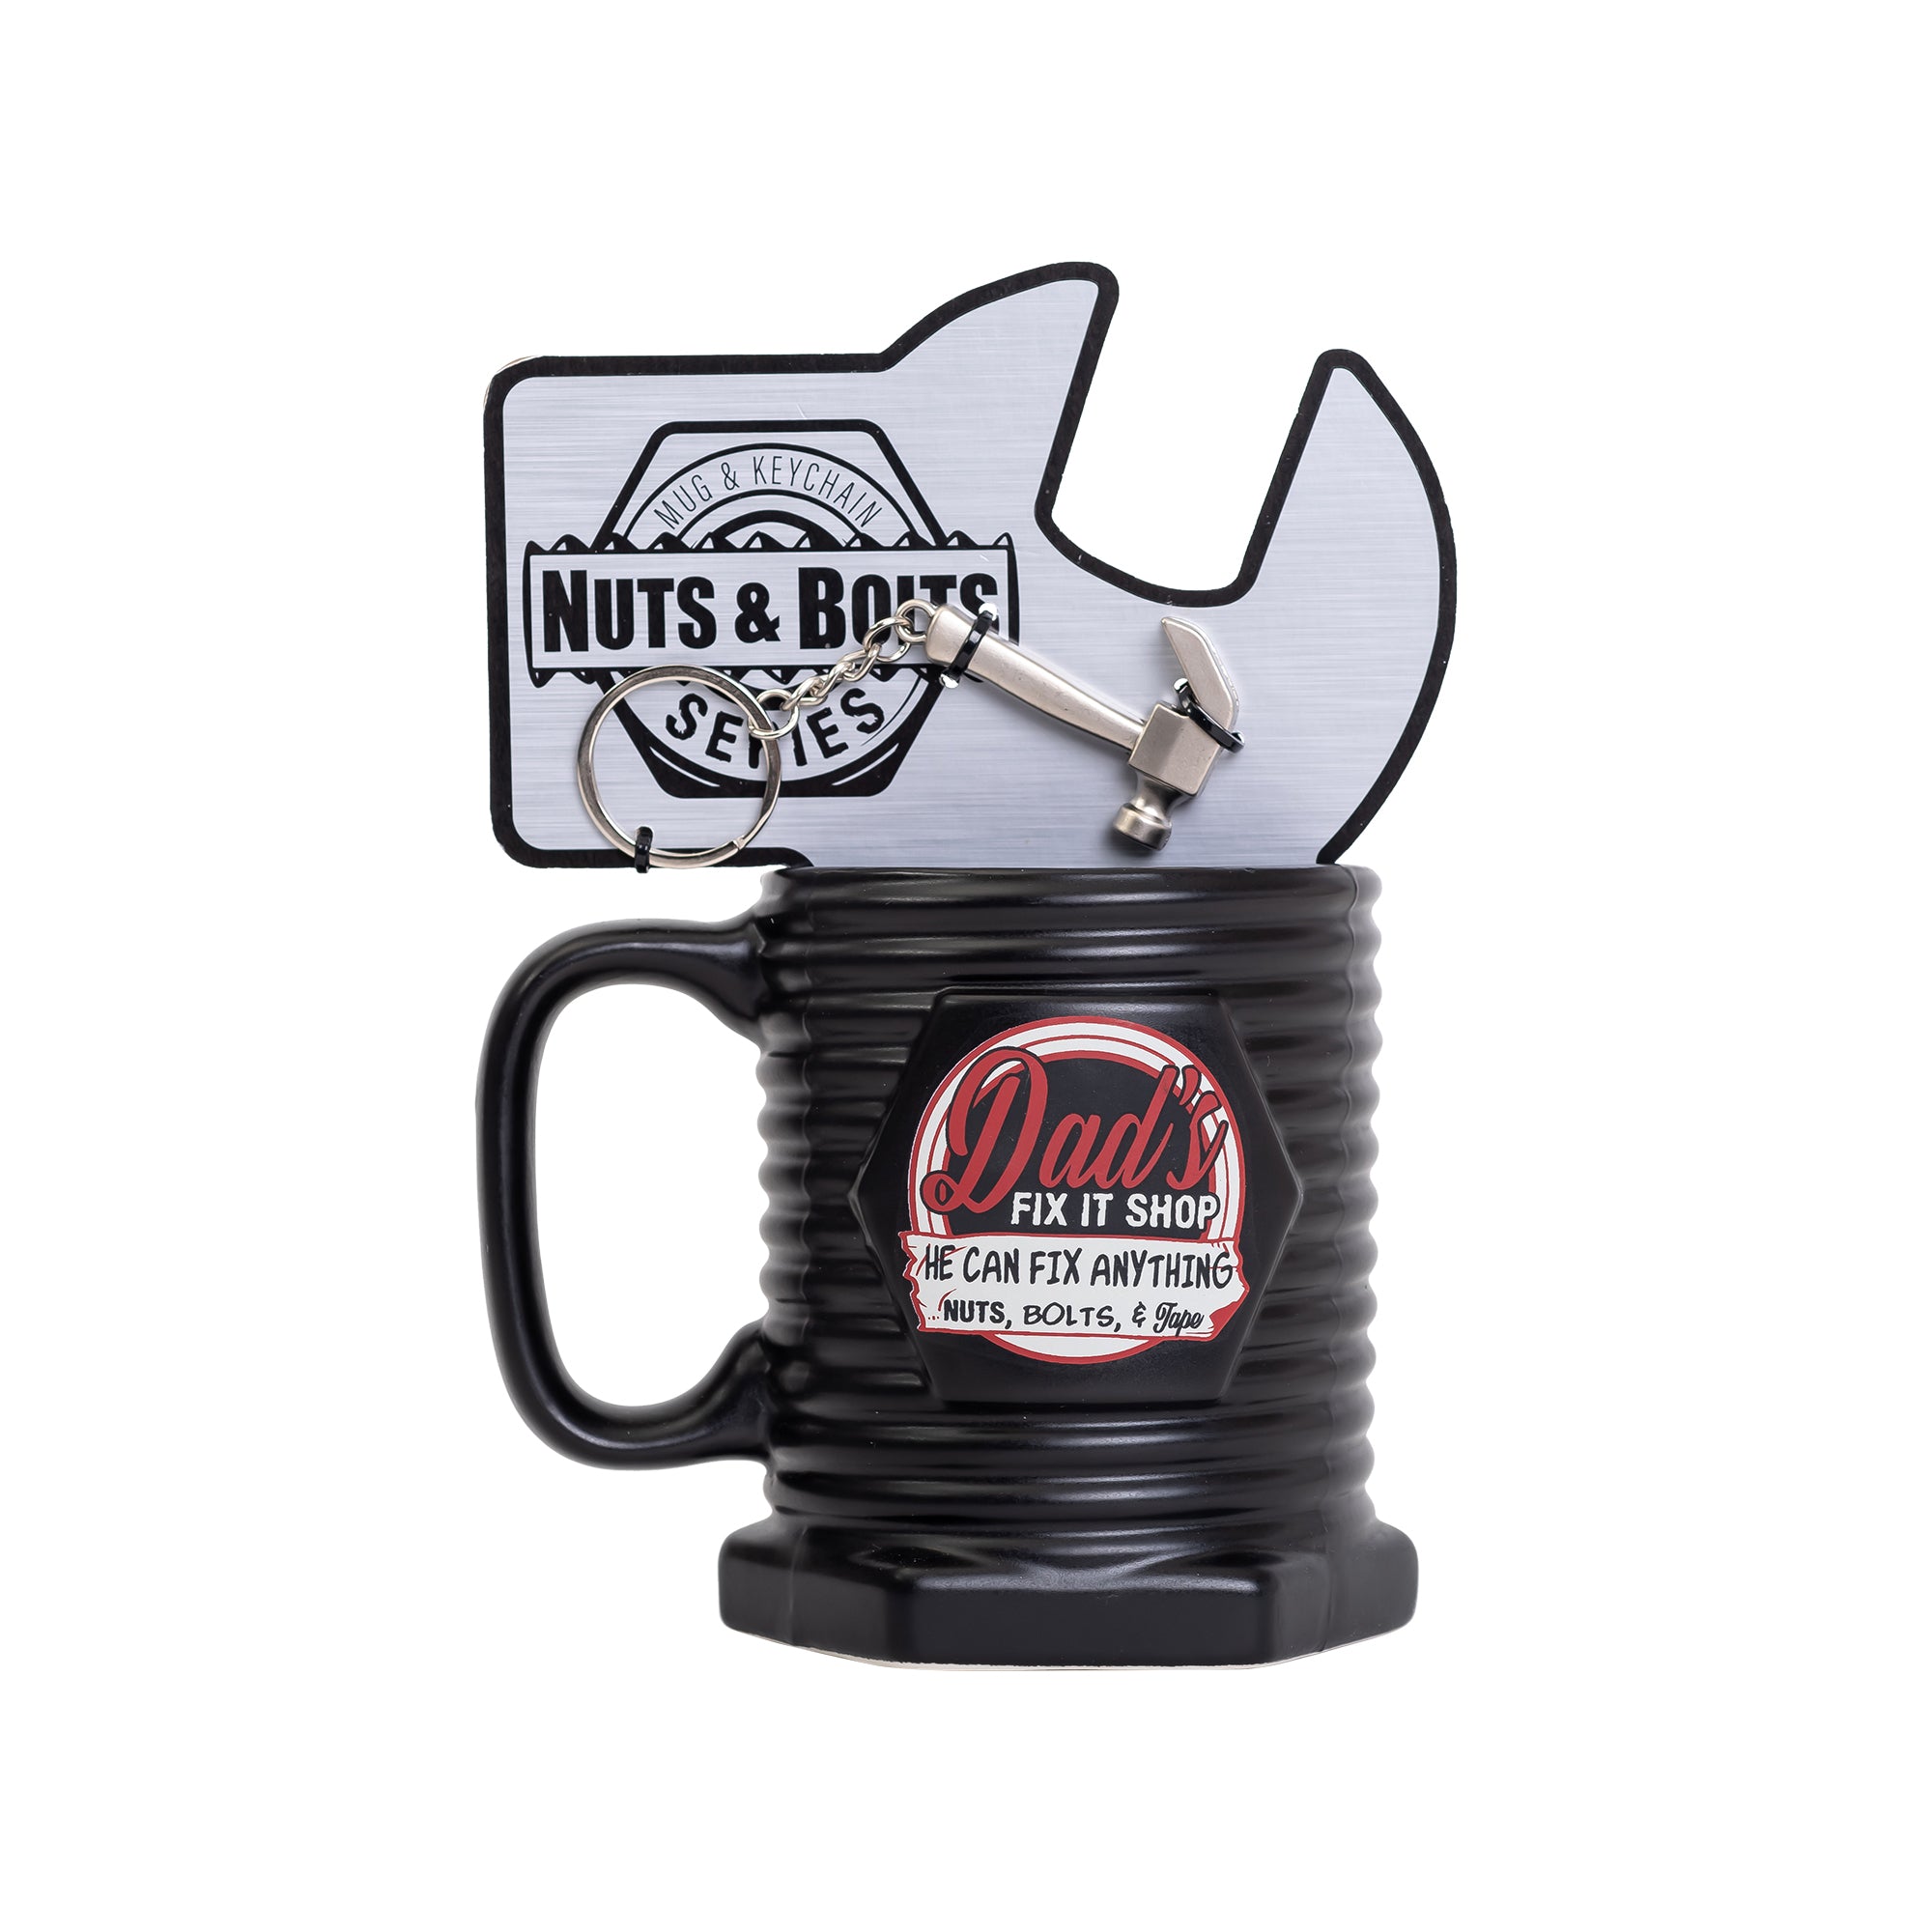 Nuts & Bolts Mug - Fix it Shop